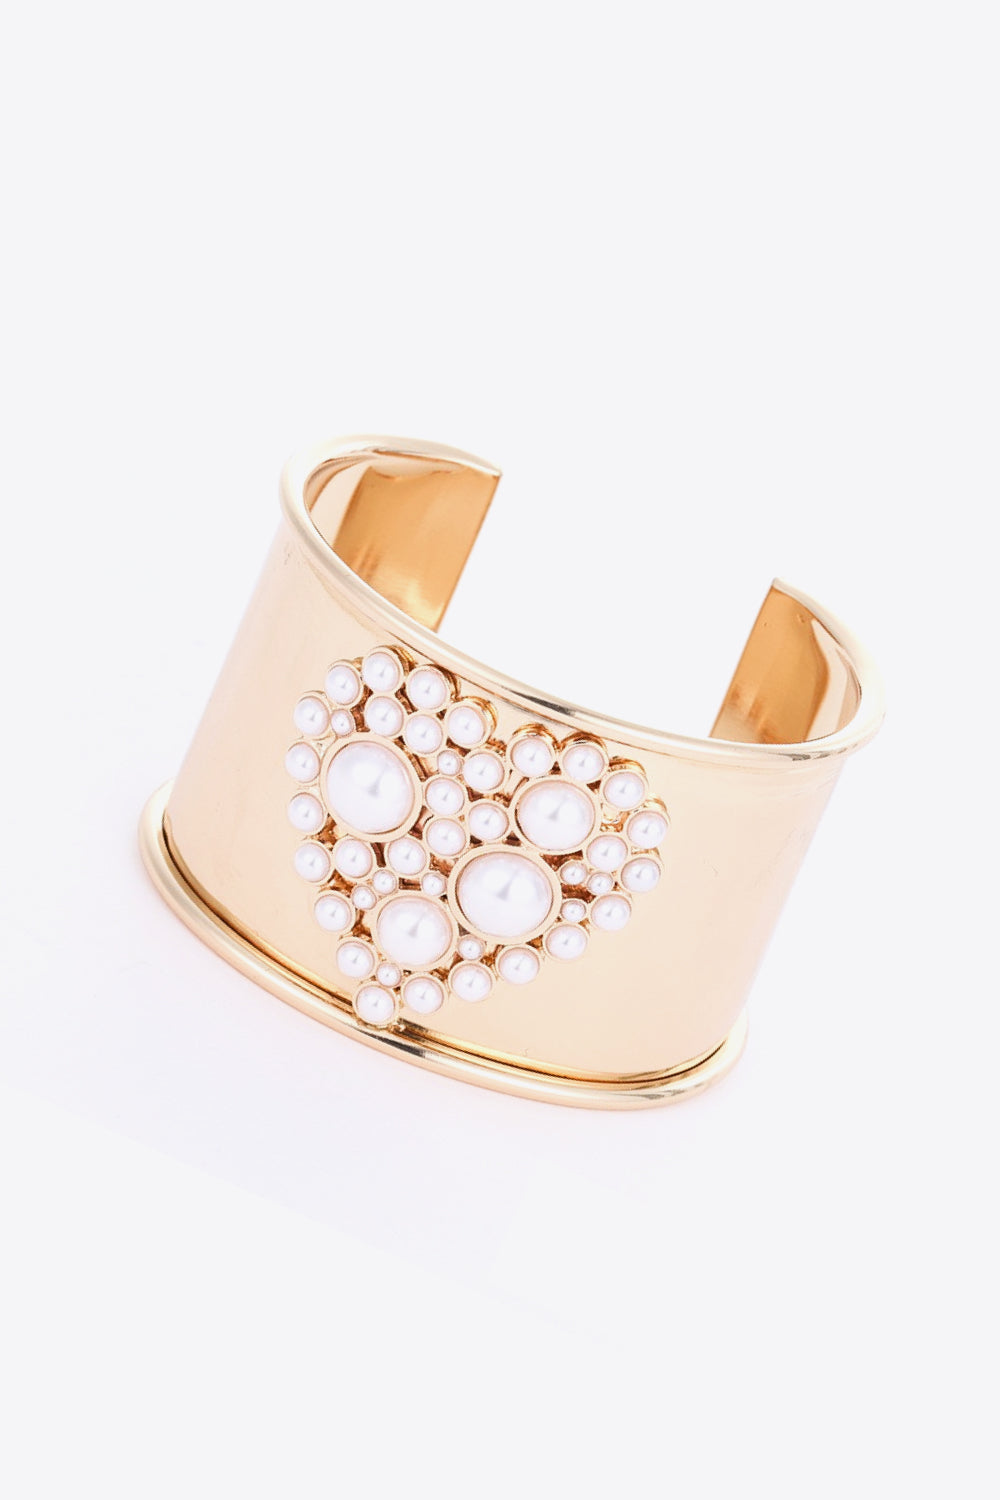 Heart Pearl Open Bracelet - Gold / One Size - Women’s Jewelry - Bracelets - 3 - 2024